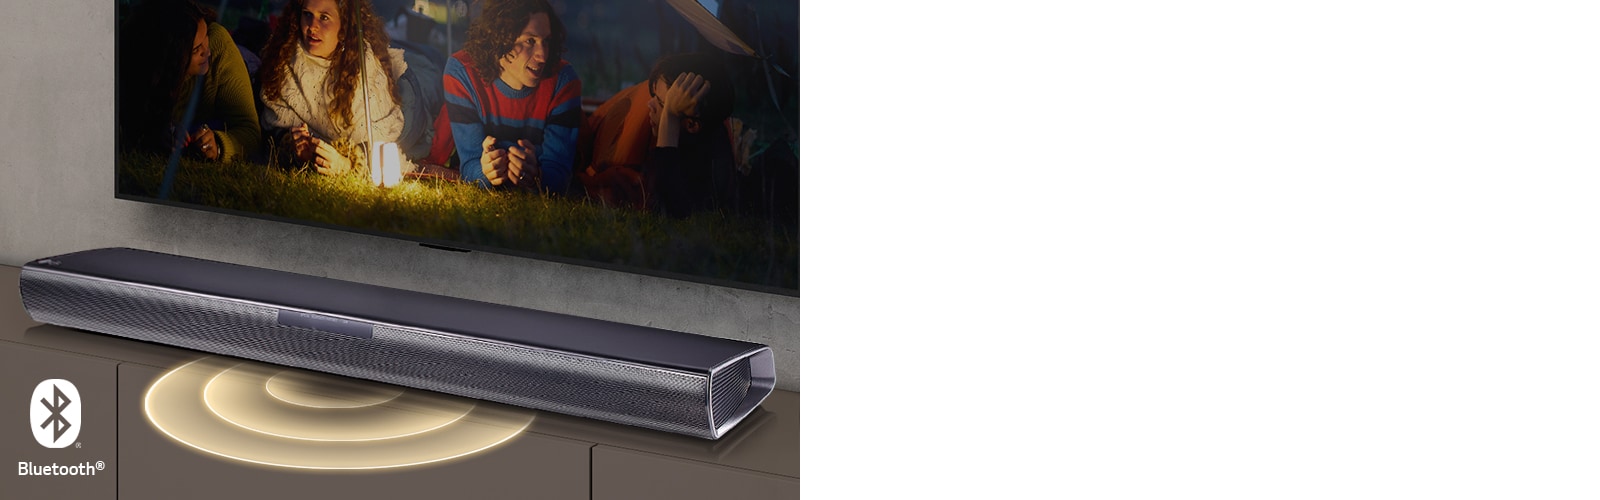 LG:n televisio seinällä, näytössä näkyy kaksi pariskuntaa makaamassa nurmikolla. Heidän edessään on lamppu. LG Sound bar on LG:n television alapuolella. Sound Barin etuosasta tulee ulos äänigrafiikka. Bluetooth-logo näkyy kuvan vasemmassa alakulmassa.